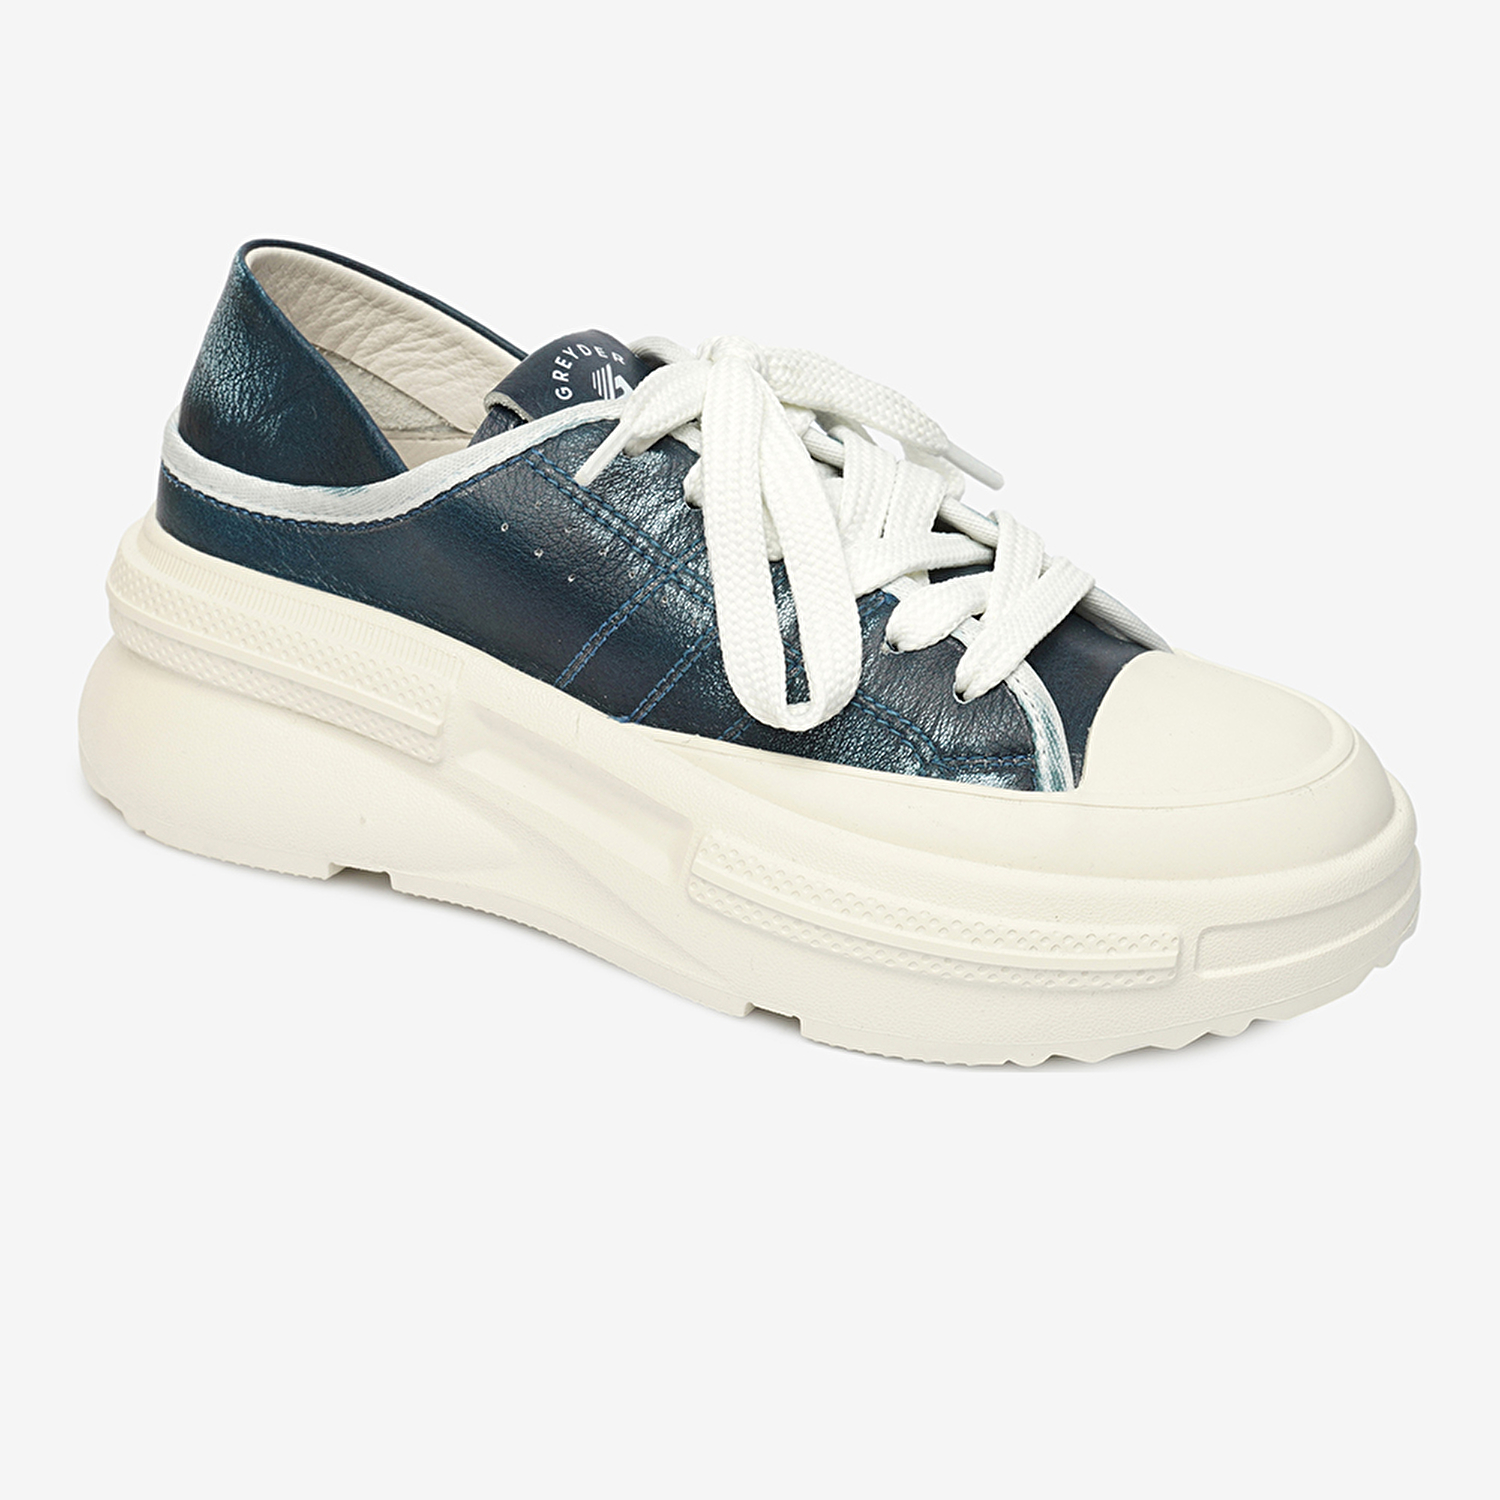 Kadın Mavi Hakiki Deri Sneaker Ayakkabı 4Y2SA33400-1